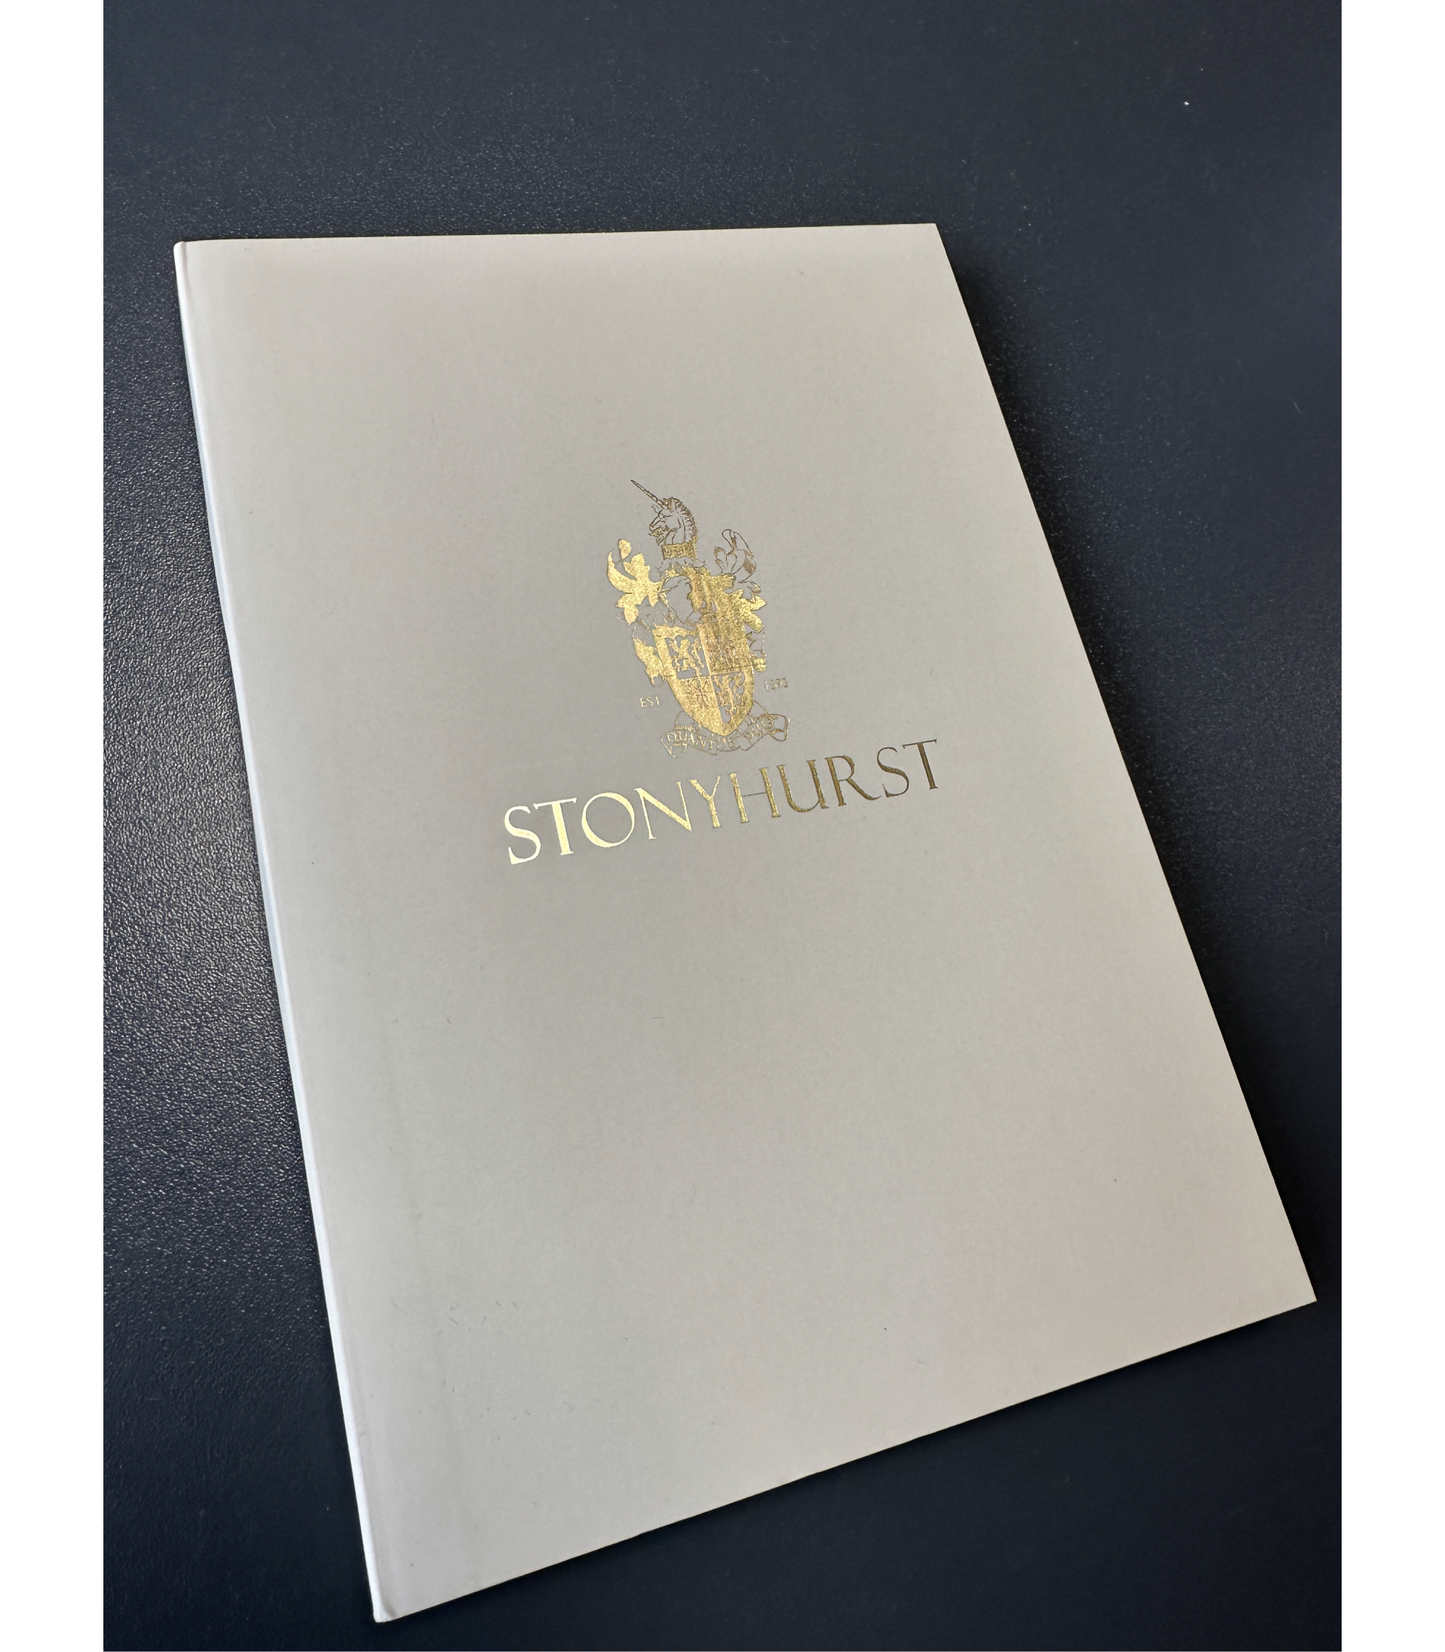 Stonyhurst Notebook